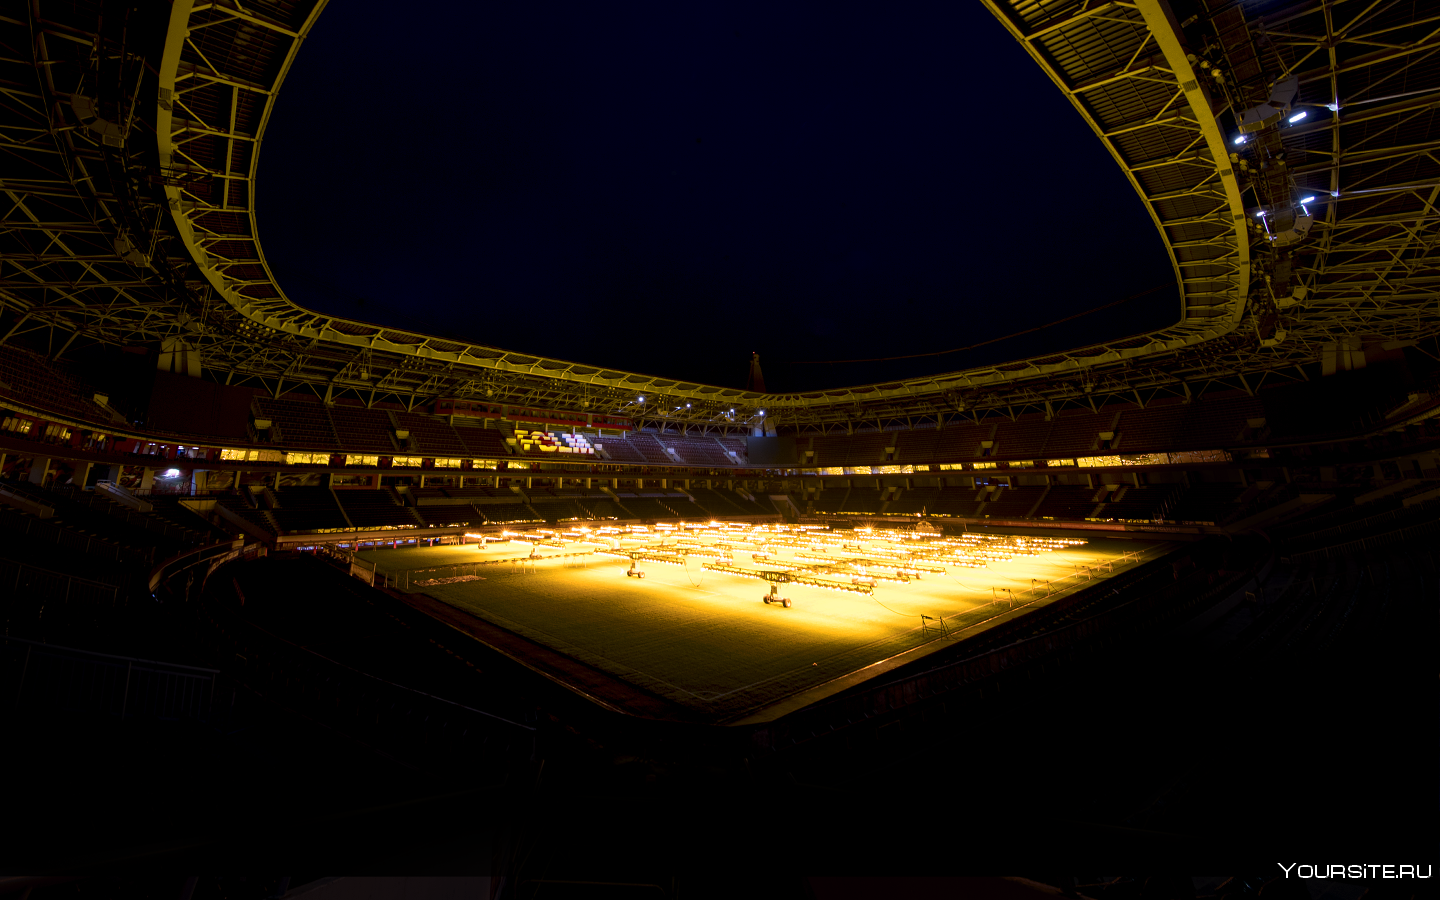 Стадион ночью. Ночной футбольный стадион. Футбольный стадион ночью. Футбольное поле ночью.